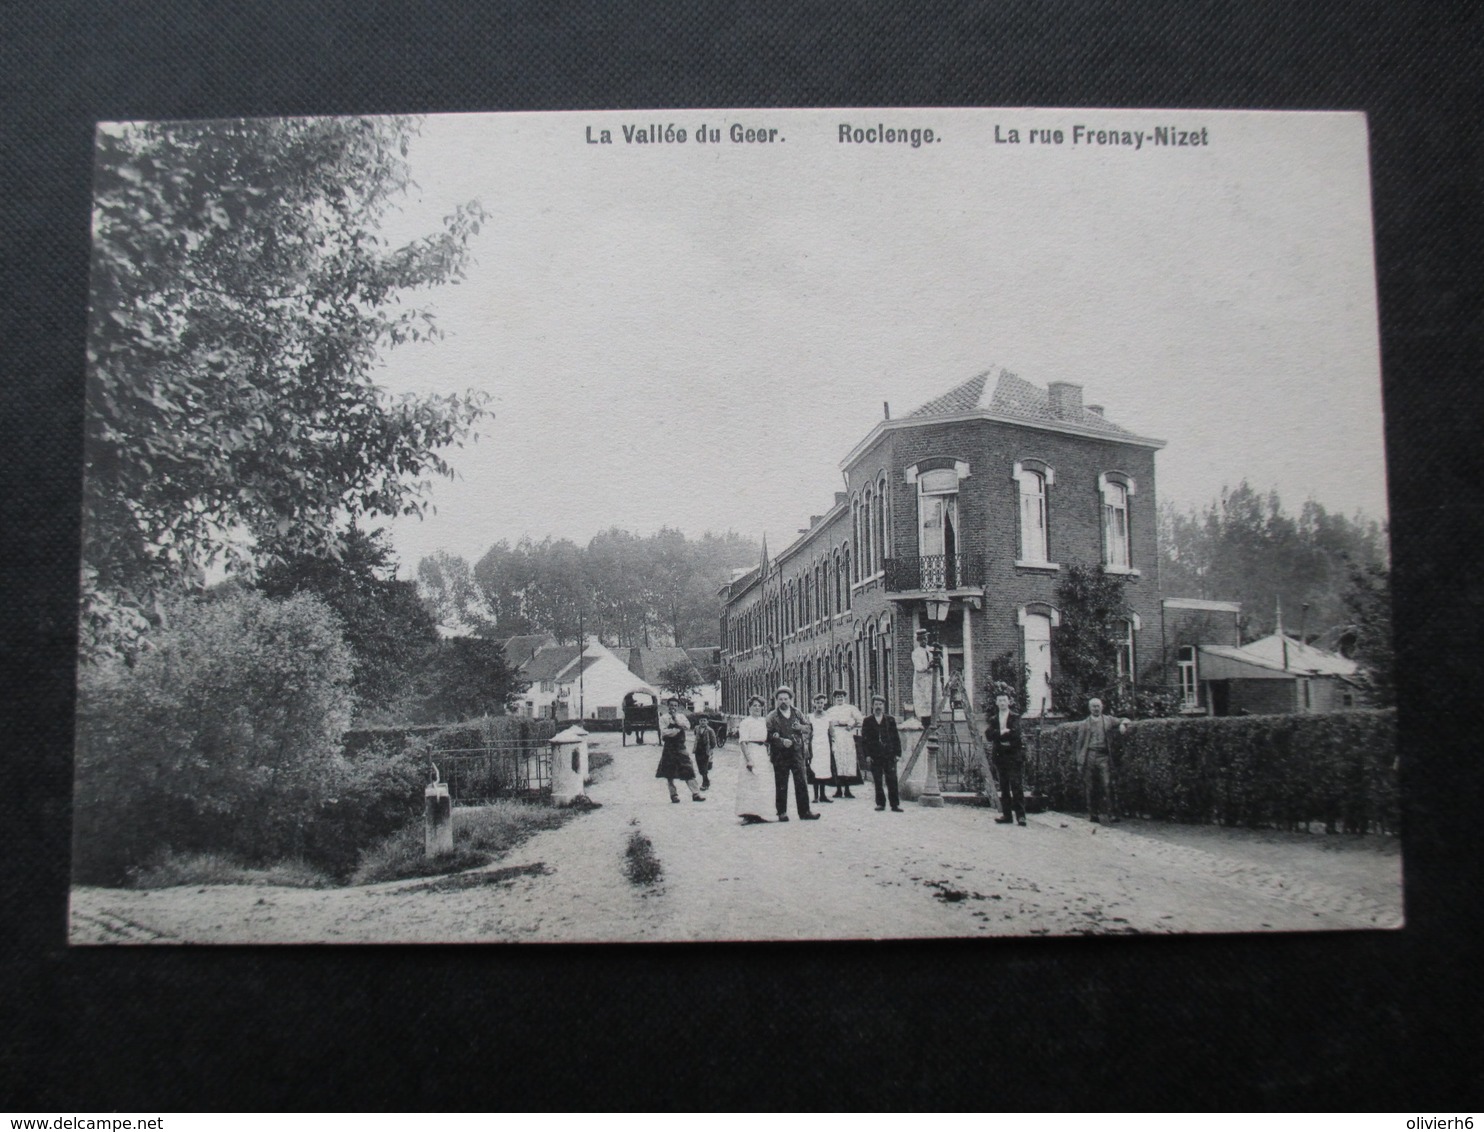 LOT 6 CP BELGIQUE (M1818) ROCLENGE (2 VUES) Villa des Tilleuls, Rue Frenay-Nizet, Rue de l'église, Avenue des coutures